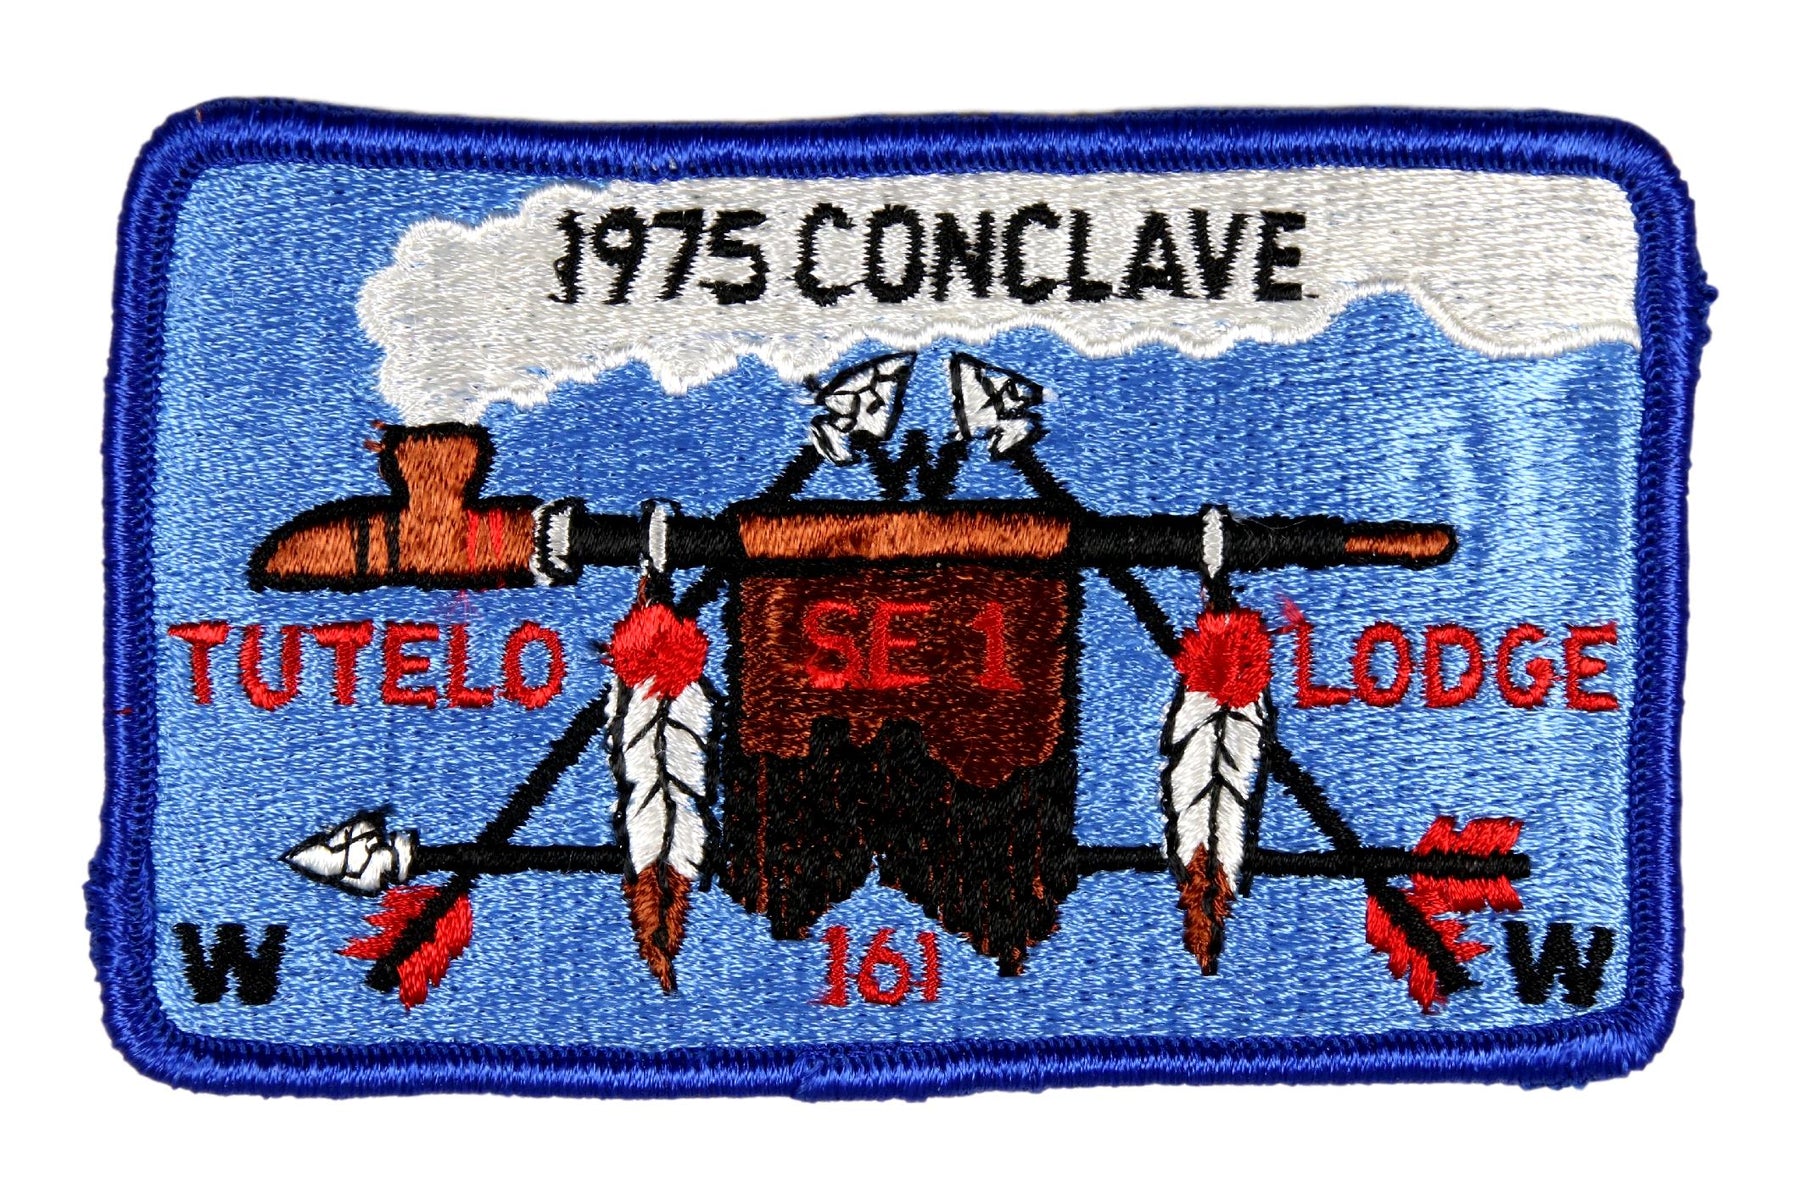 1975 Section SE-1 Conclave Patch